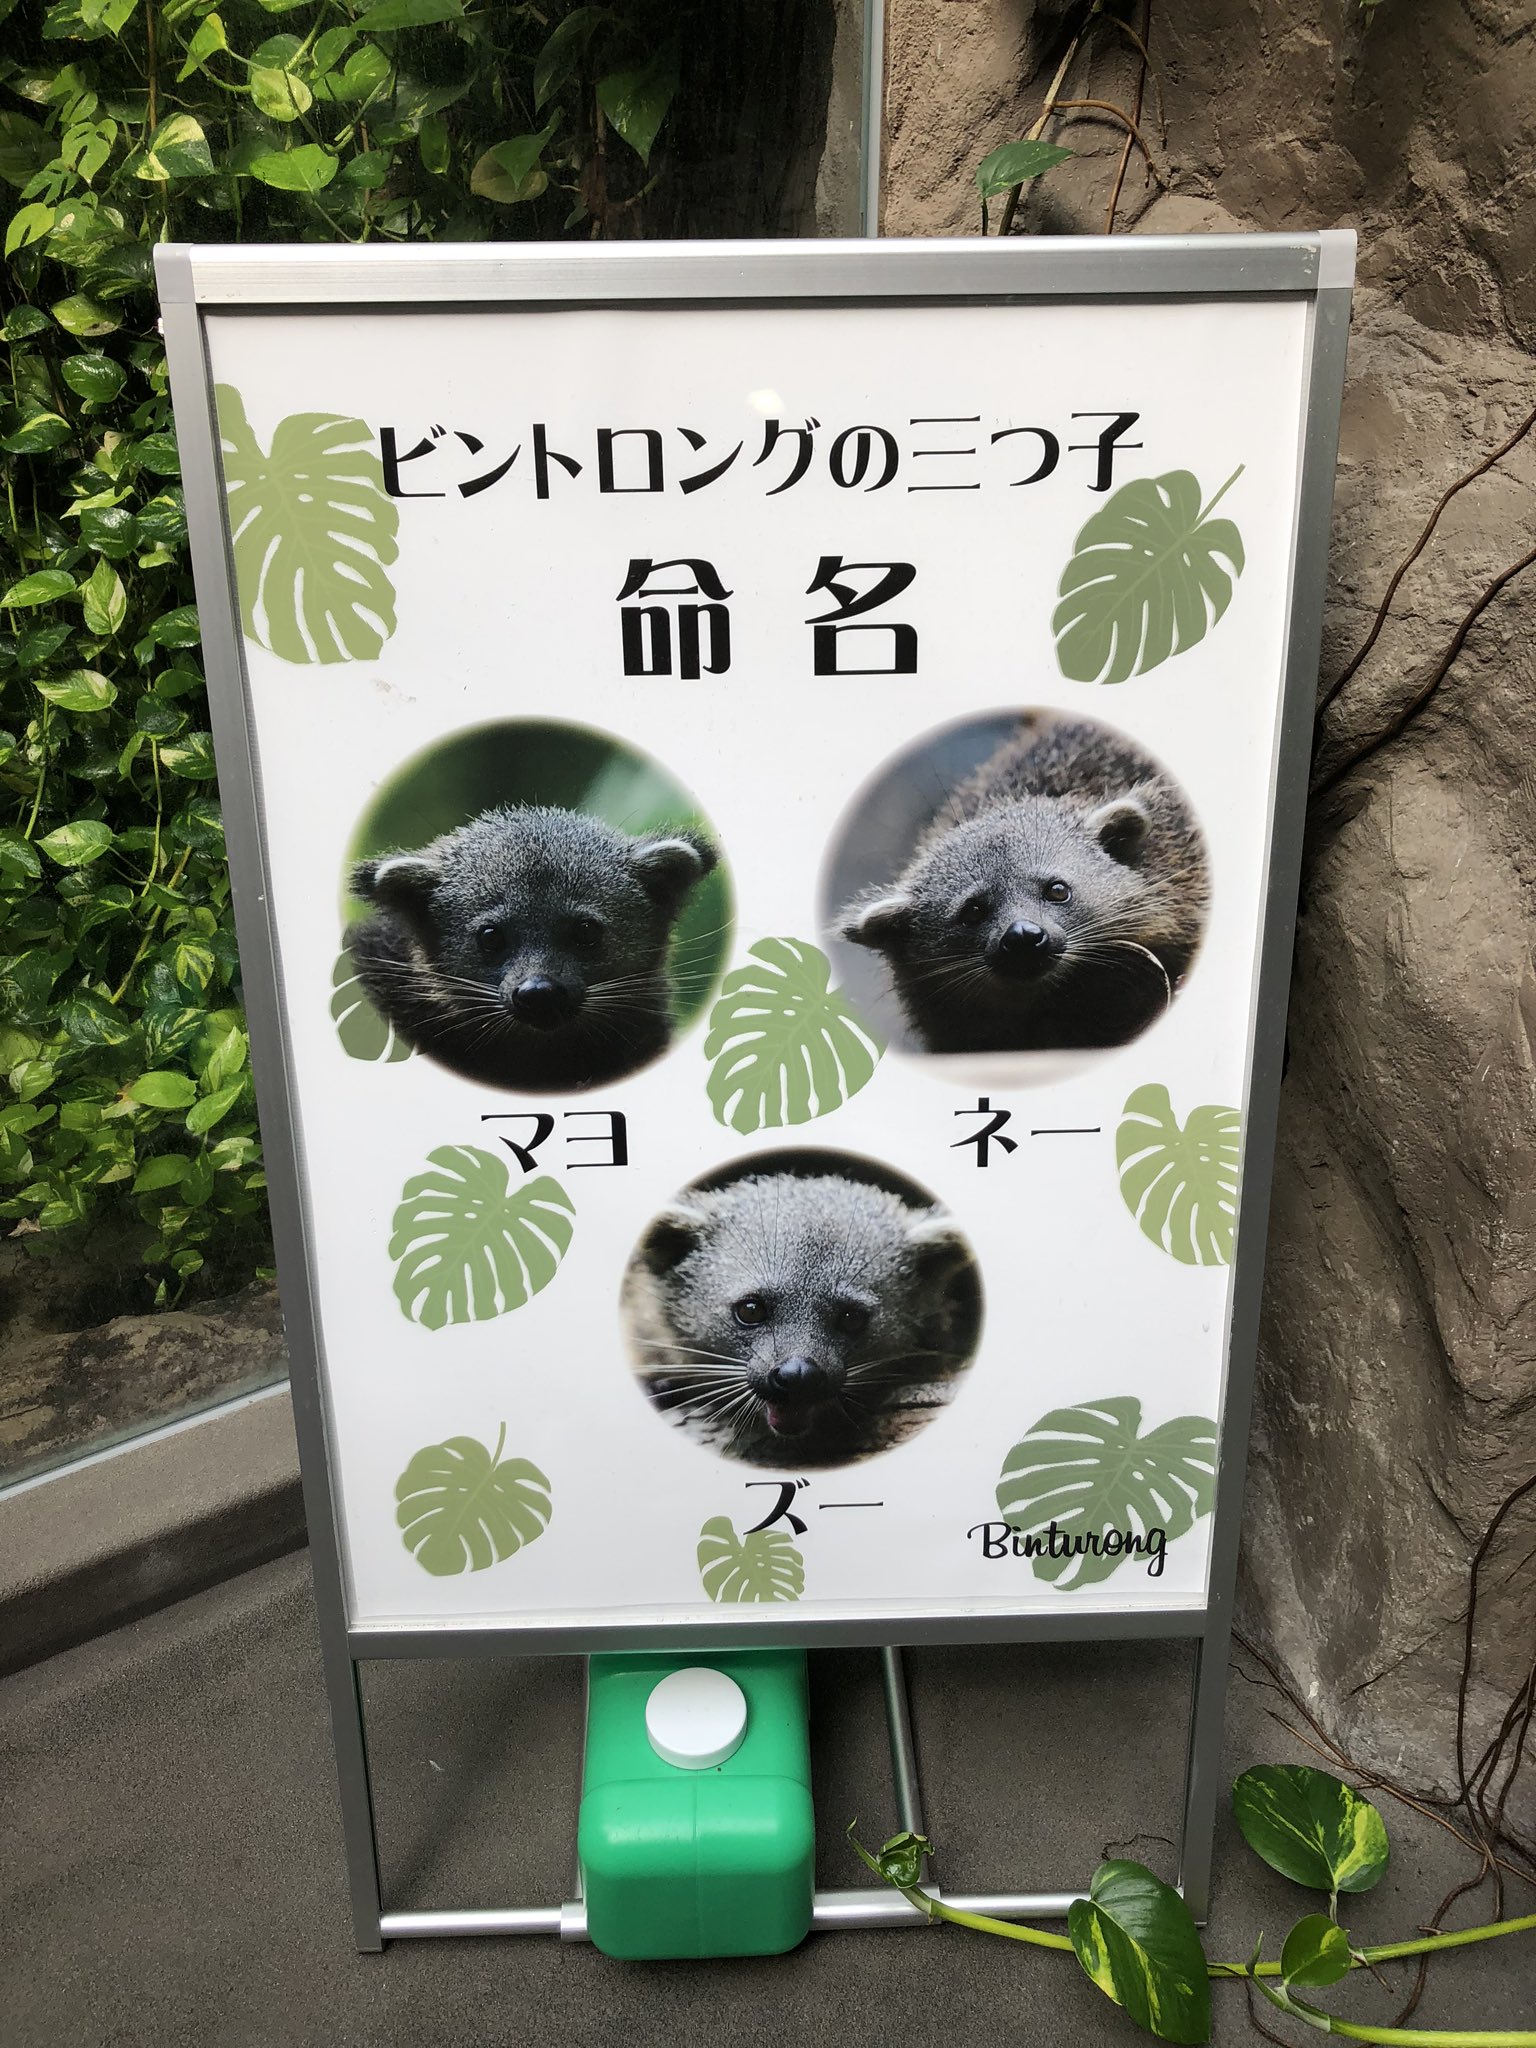 高知県の動物園、動物につける名前のセンスが独特すぎるwwww